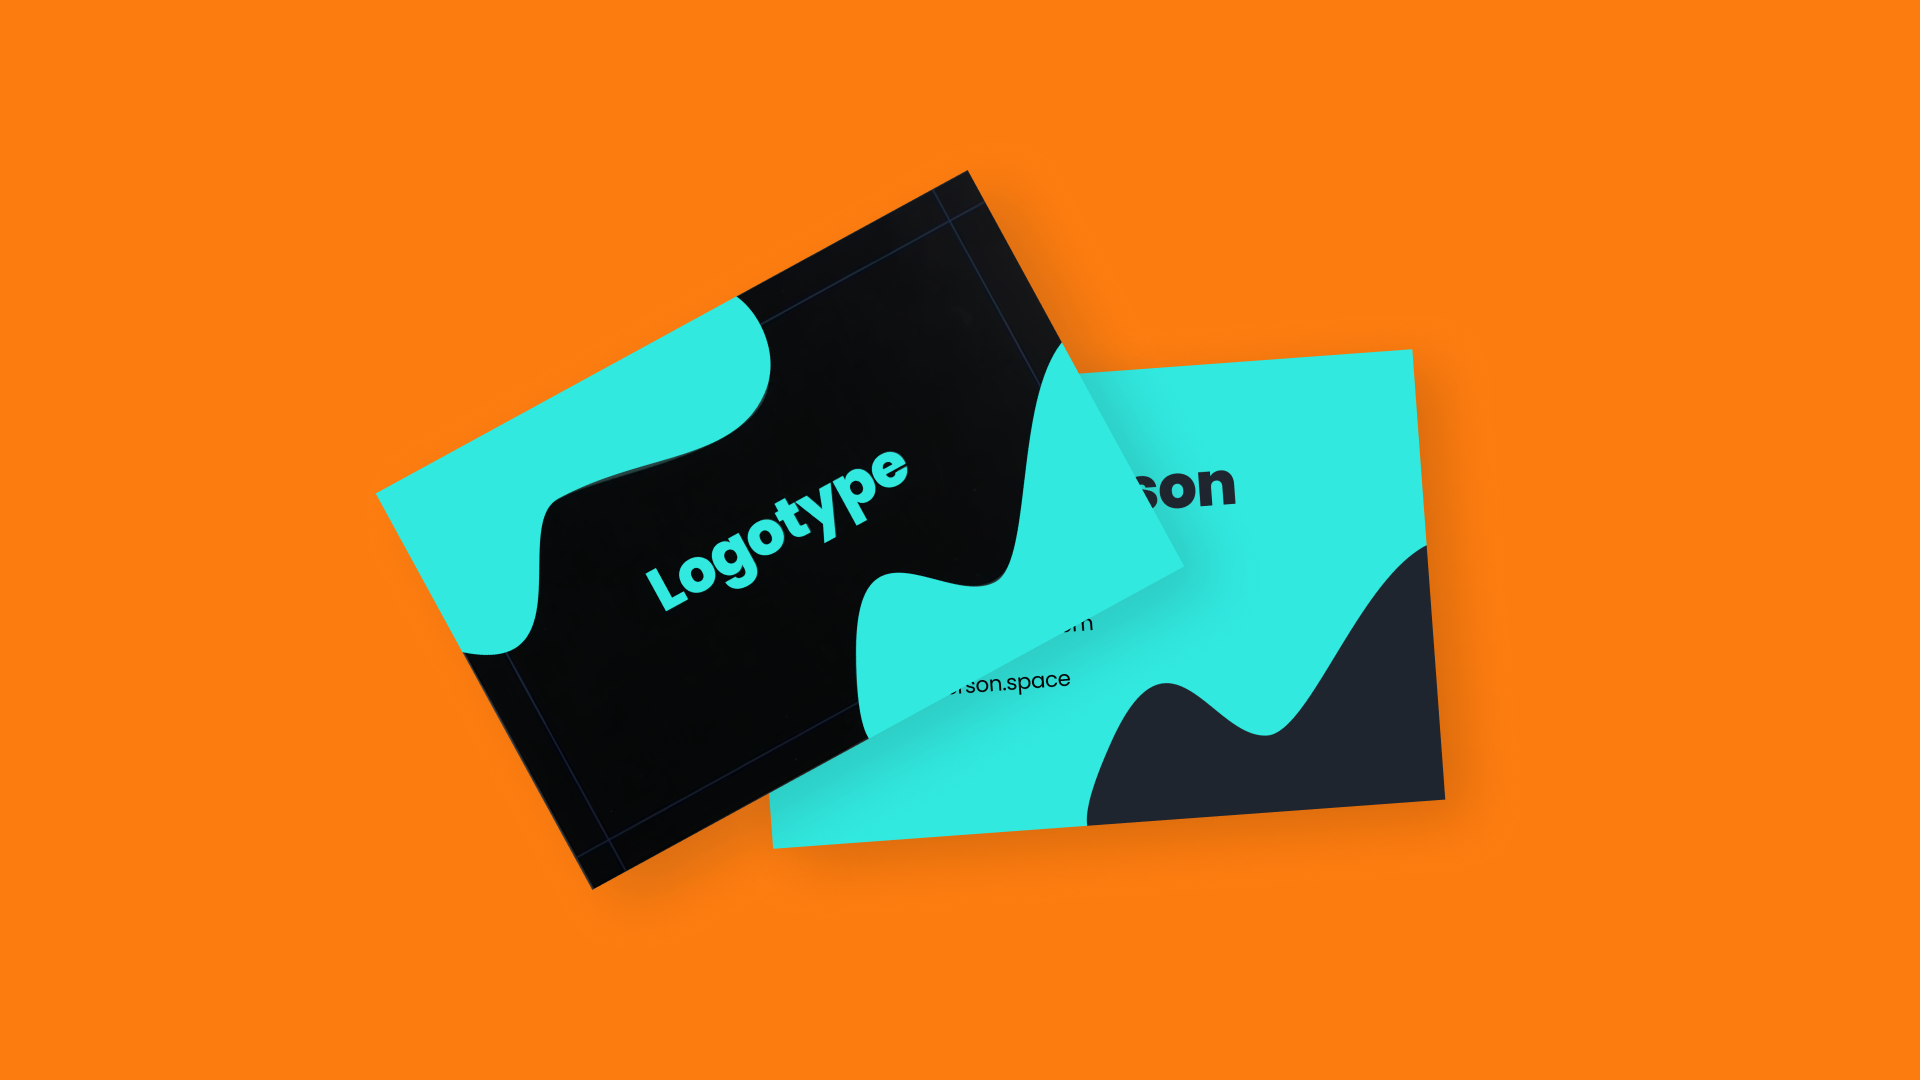 Design a unique business card